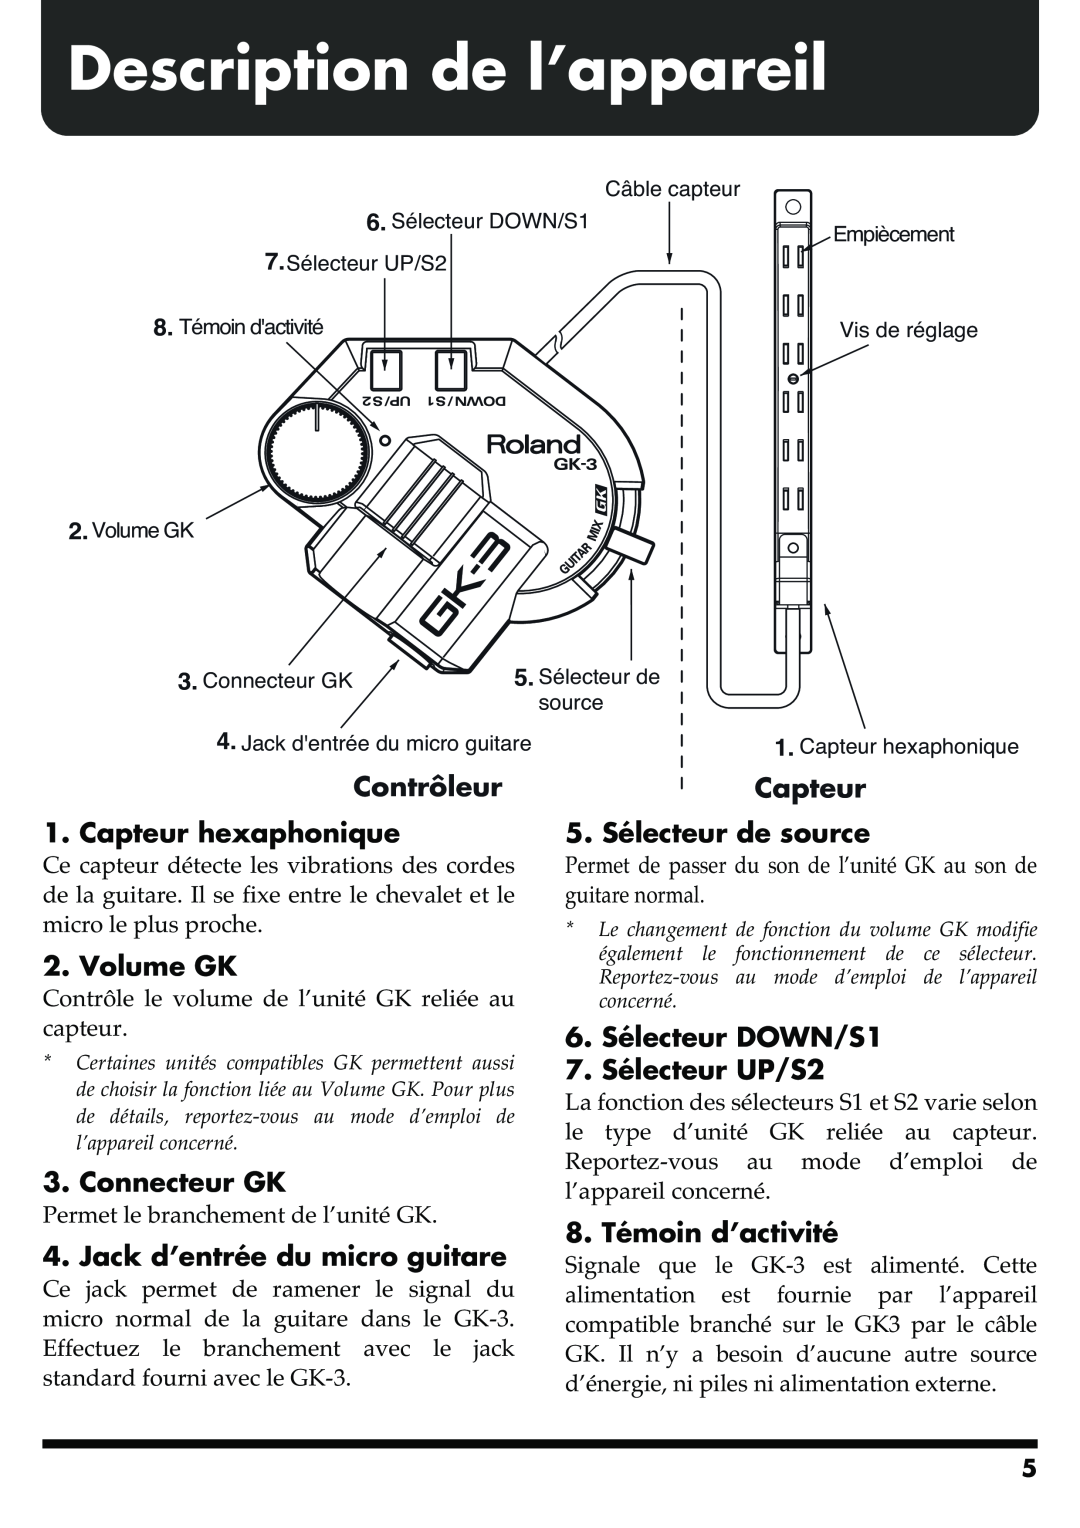 Roland GR-20 manual Description de l’appareil, Contrôleur, Capteur hexaphonique, 5. Sélecteur de source, Volume GK 